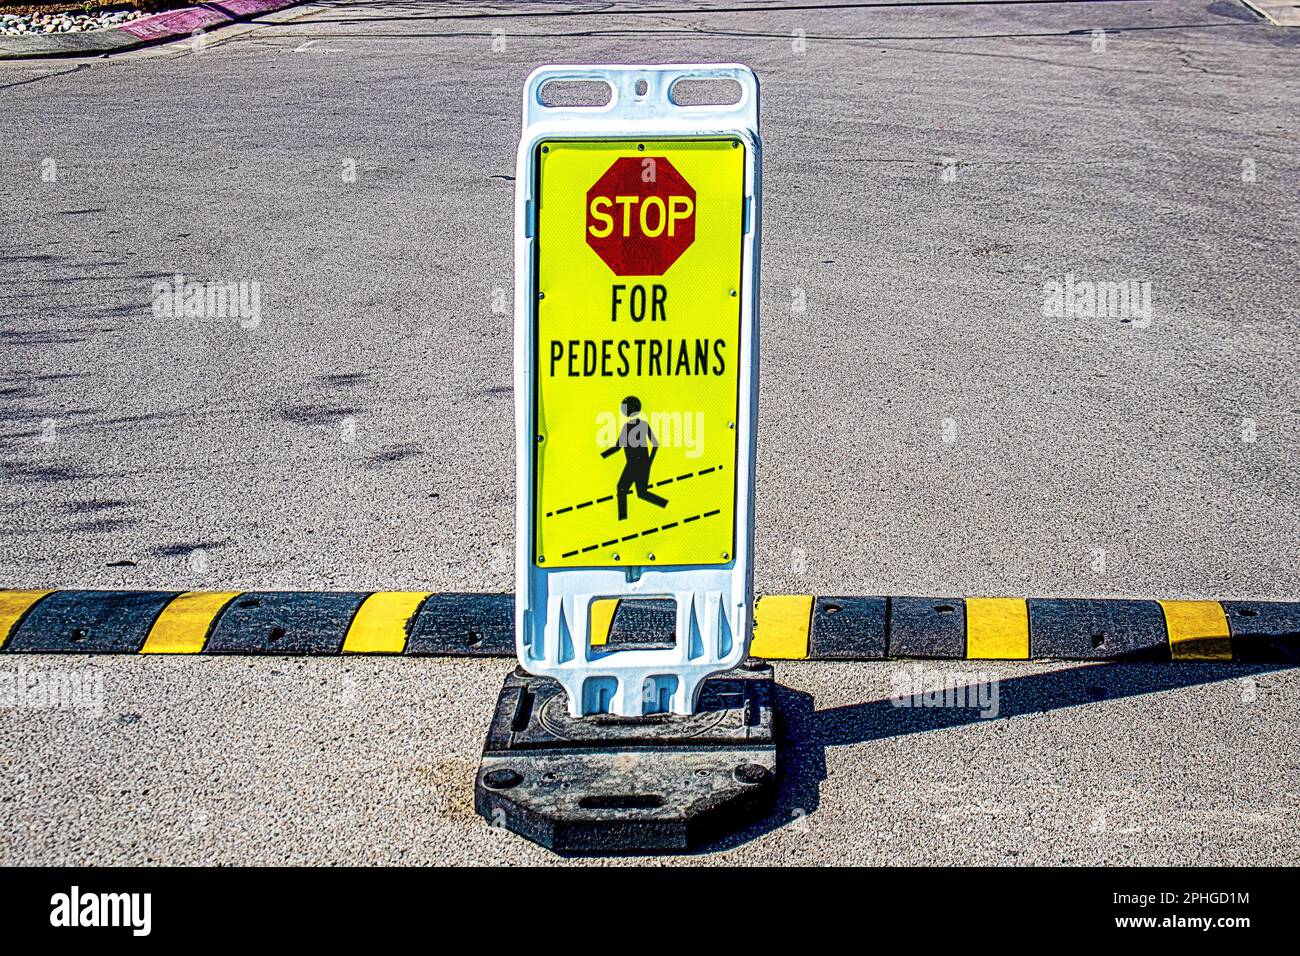 Gewichteter Stand-up-Stopp für Fußgänger Schild auf einem Parkplatz aus körnigem Beton mit gestreifter Kopie der Bodenschwelle Stockfoto